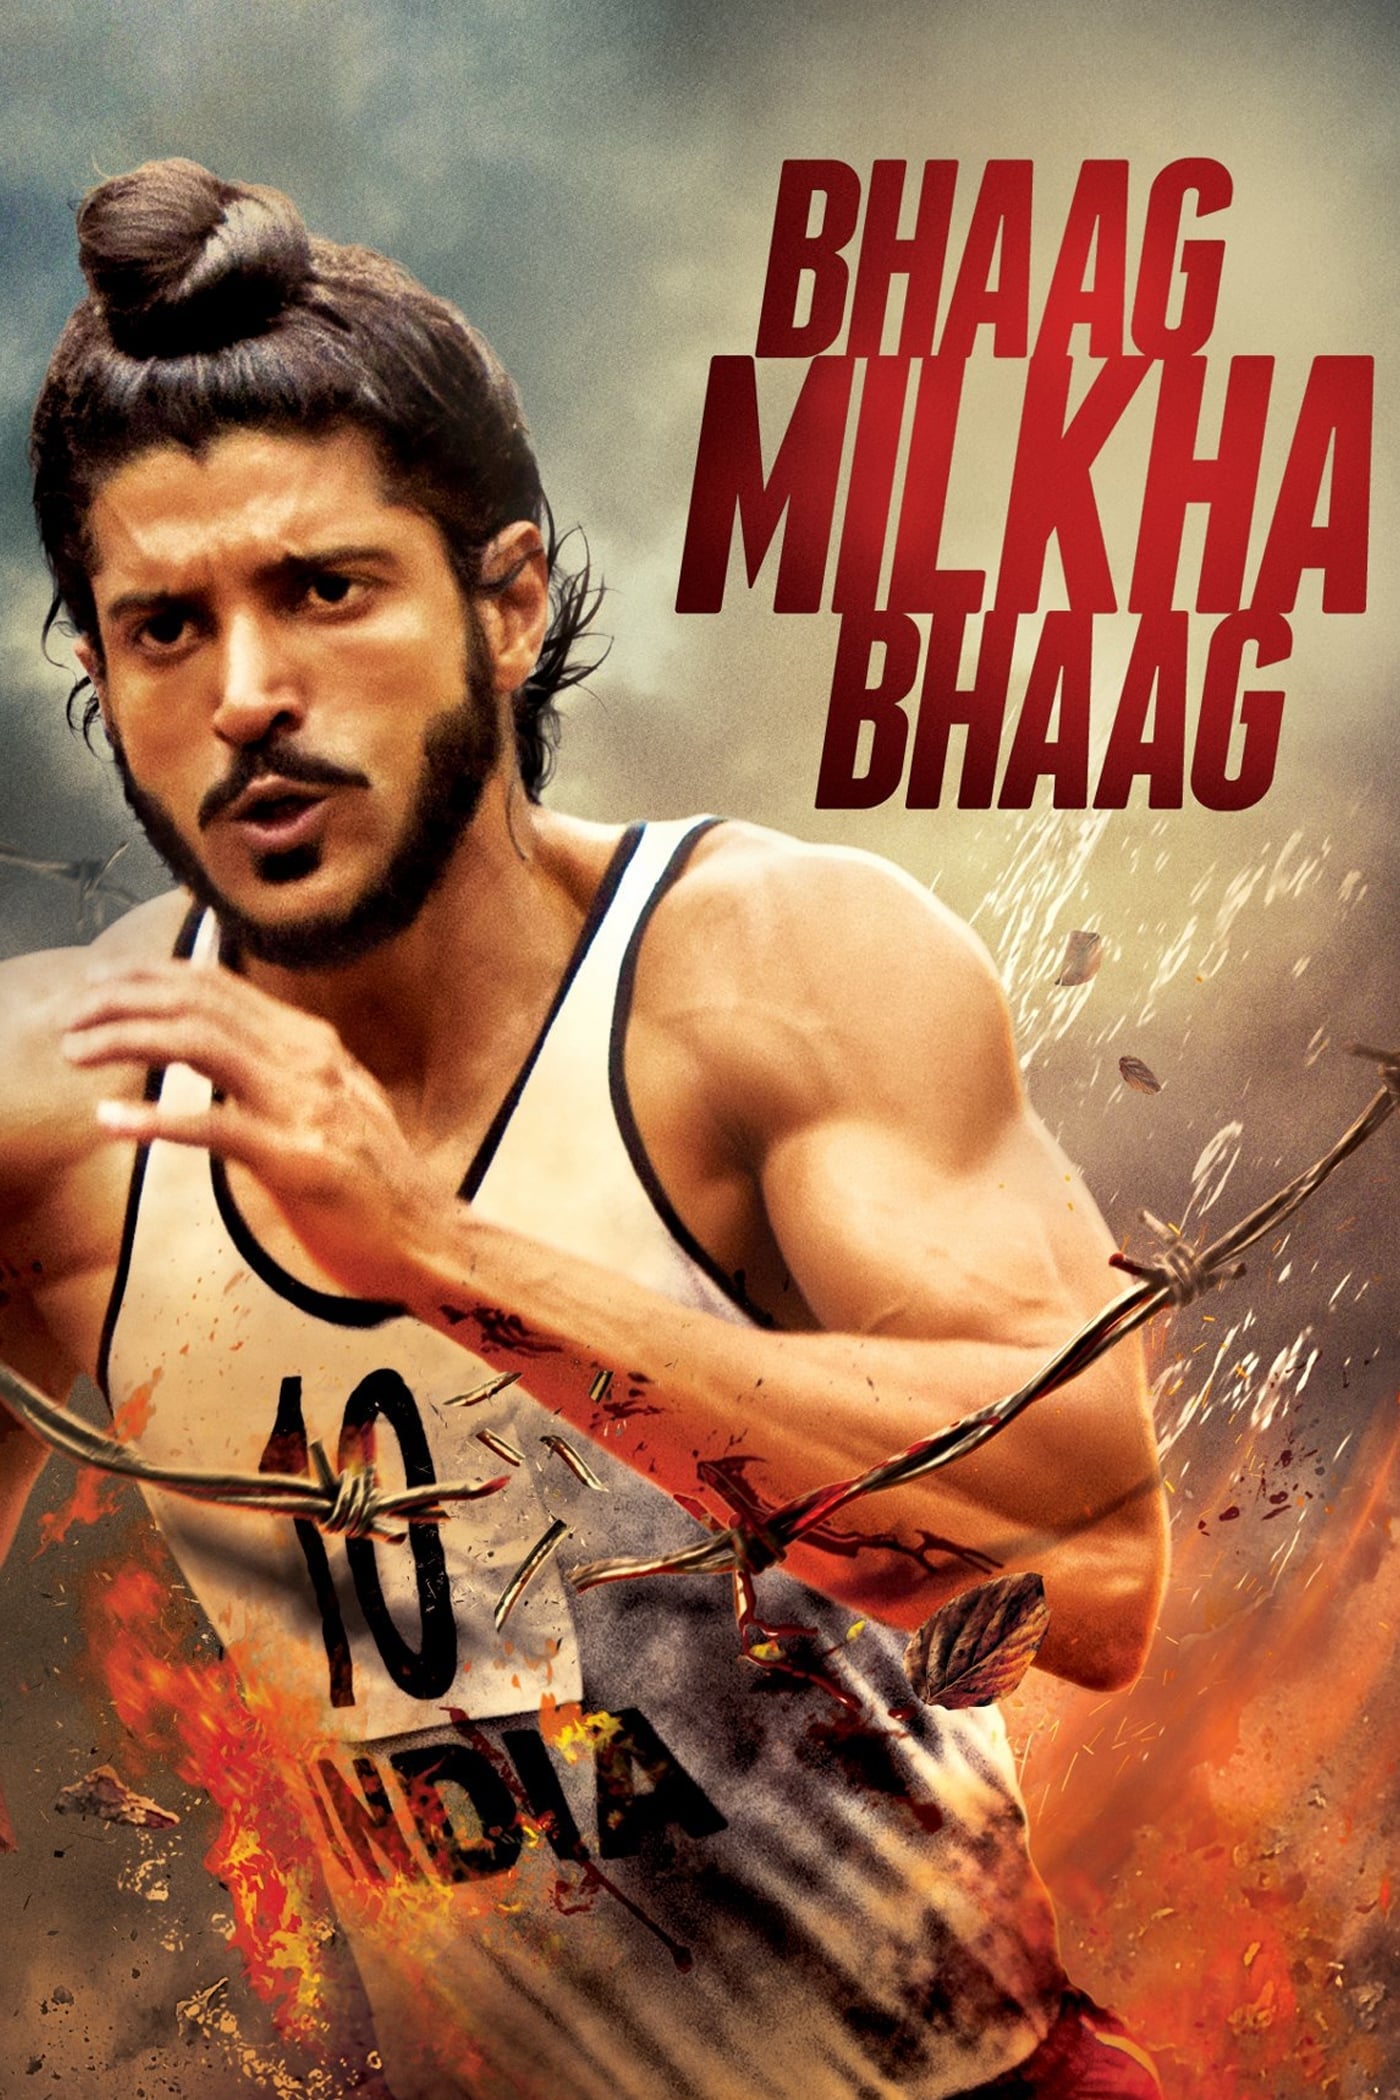 Bhaag Milkha Bhaag (2013)